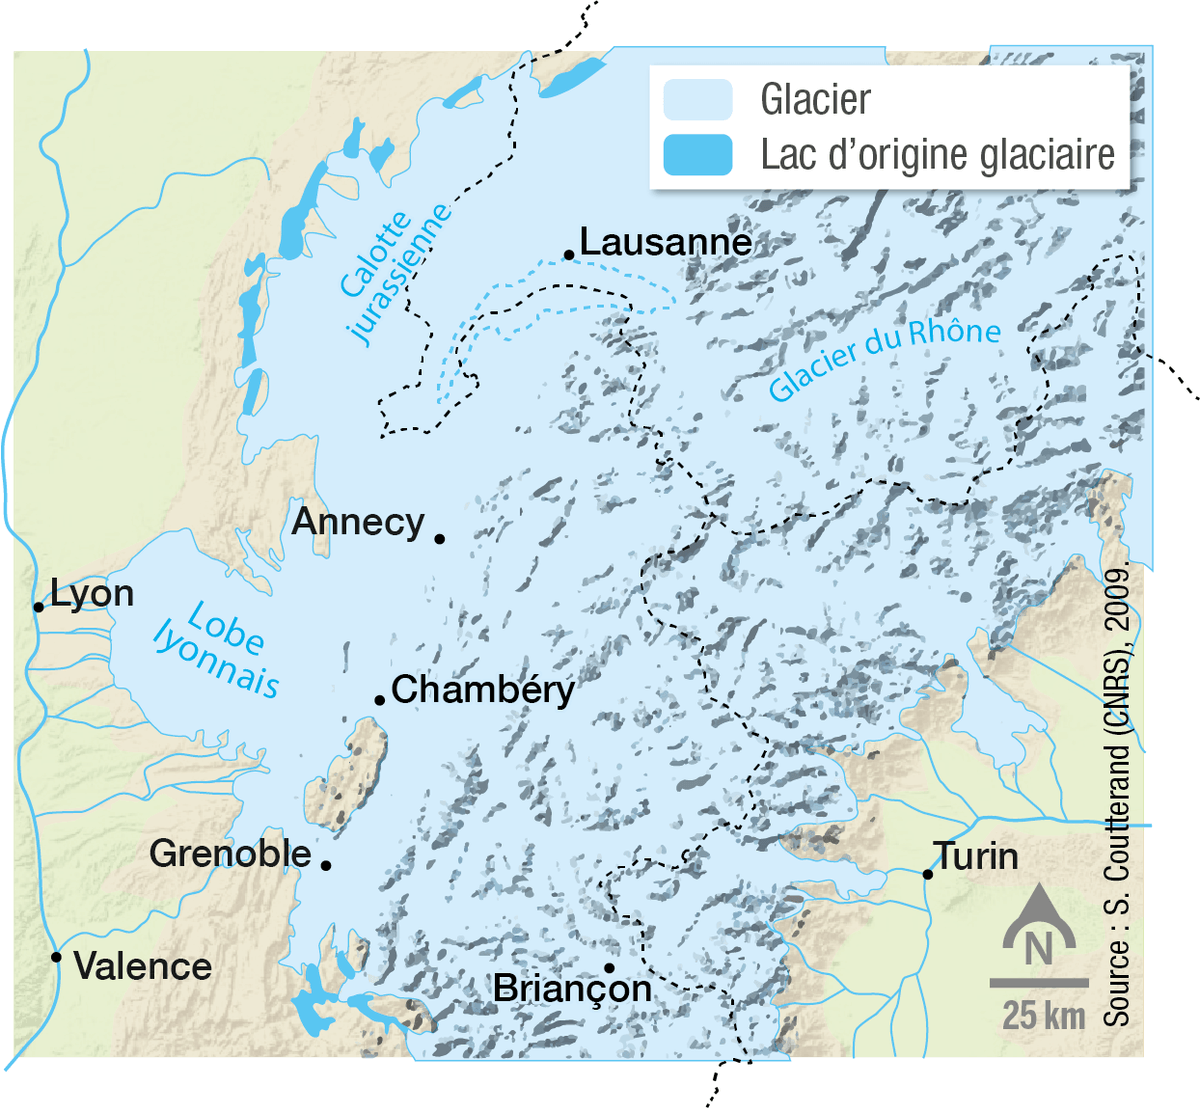 Les glaciers des Alpes au maximum de la glaciation de Würm, il y a 40 000 ans.